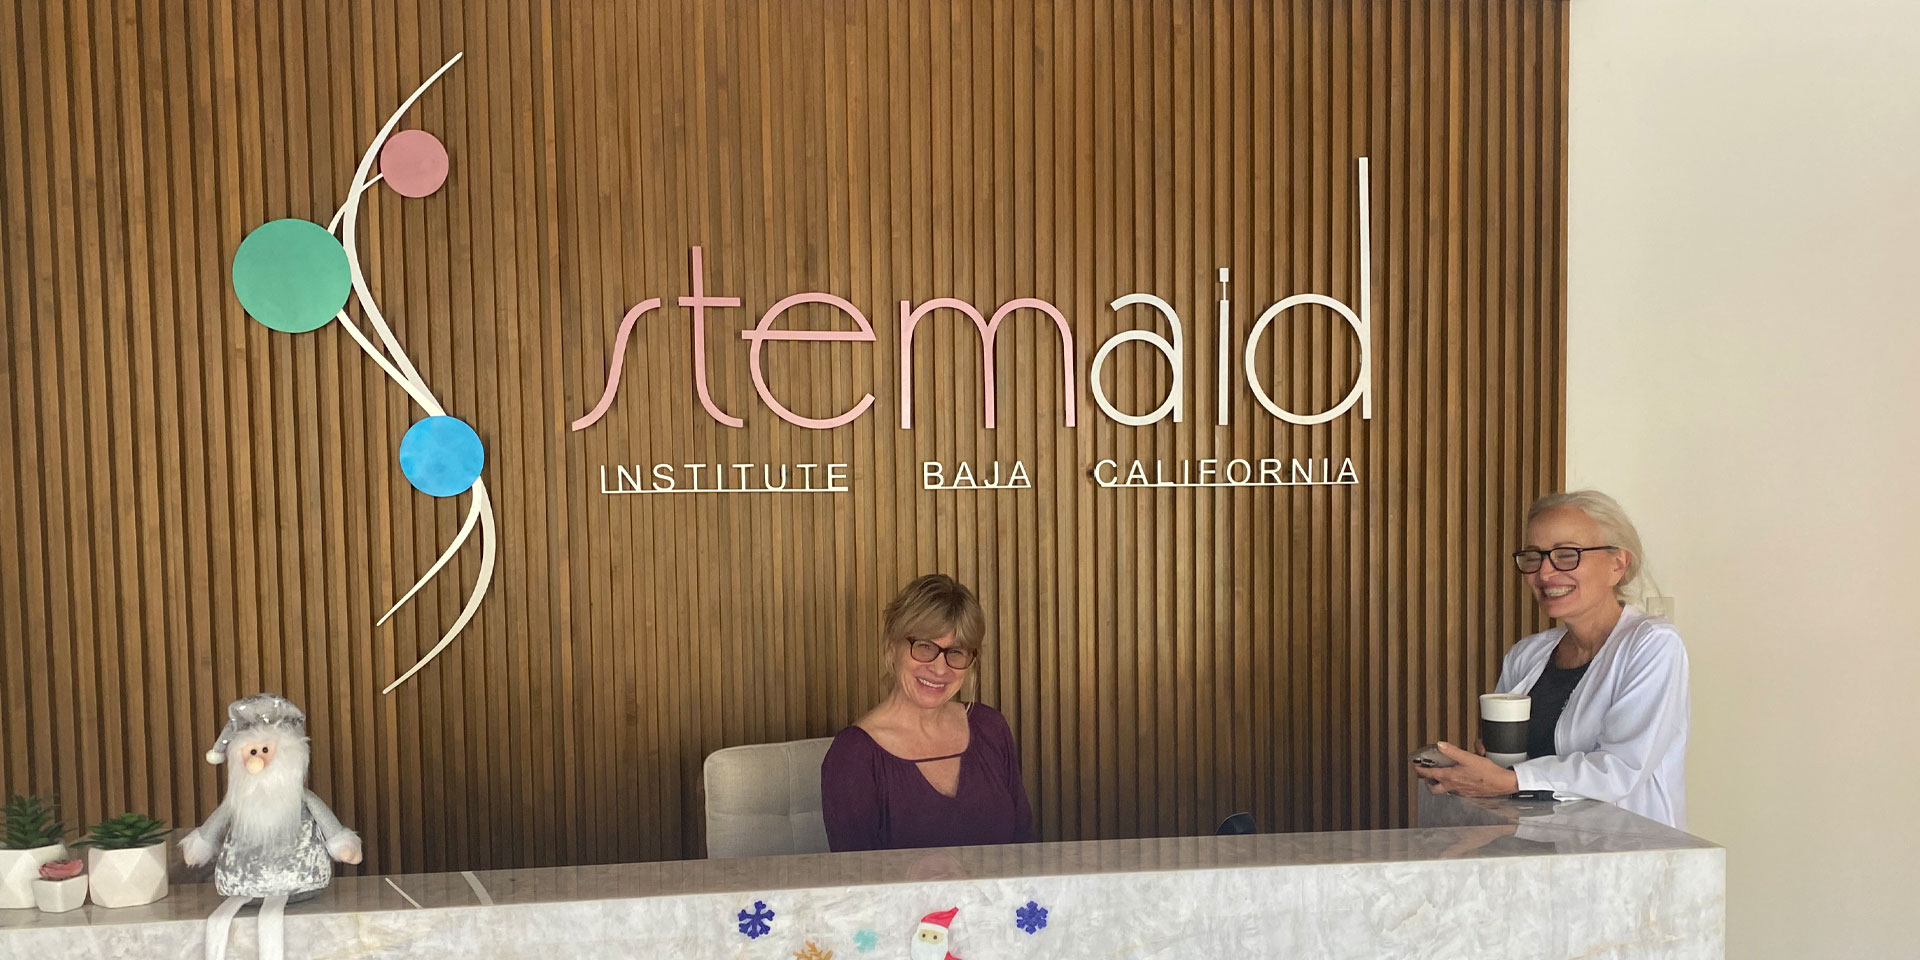 Stemaid Institute Baja California